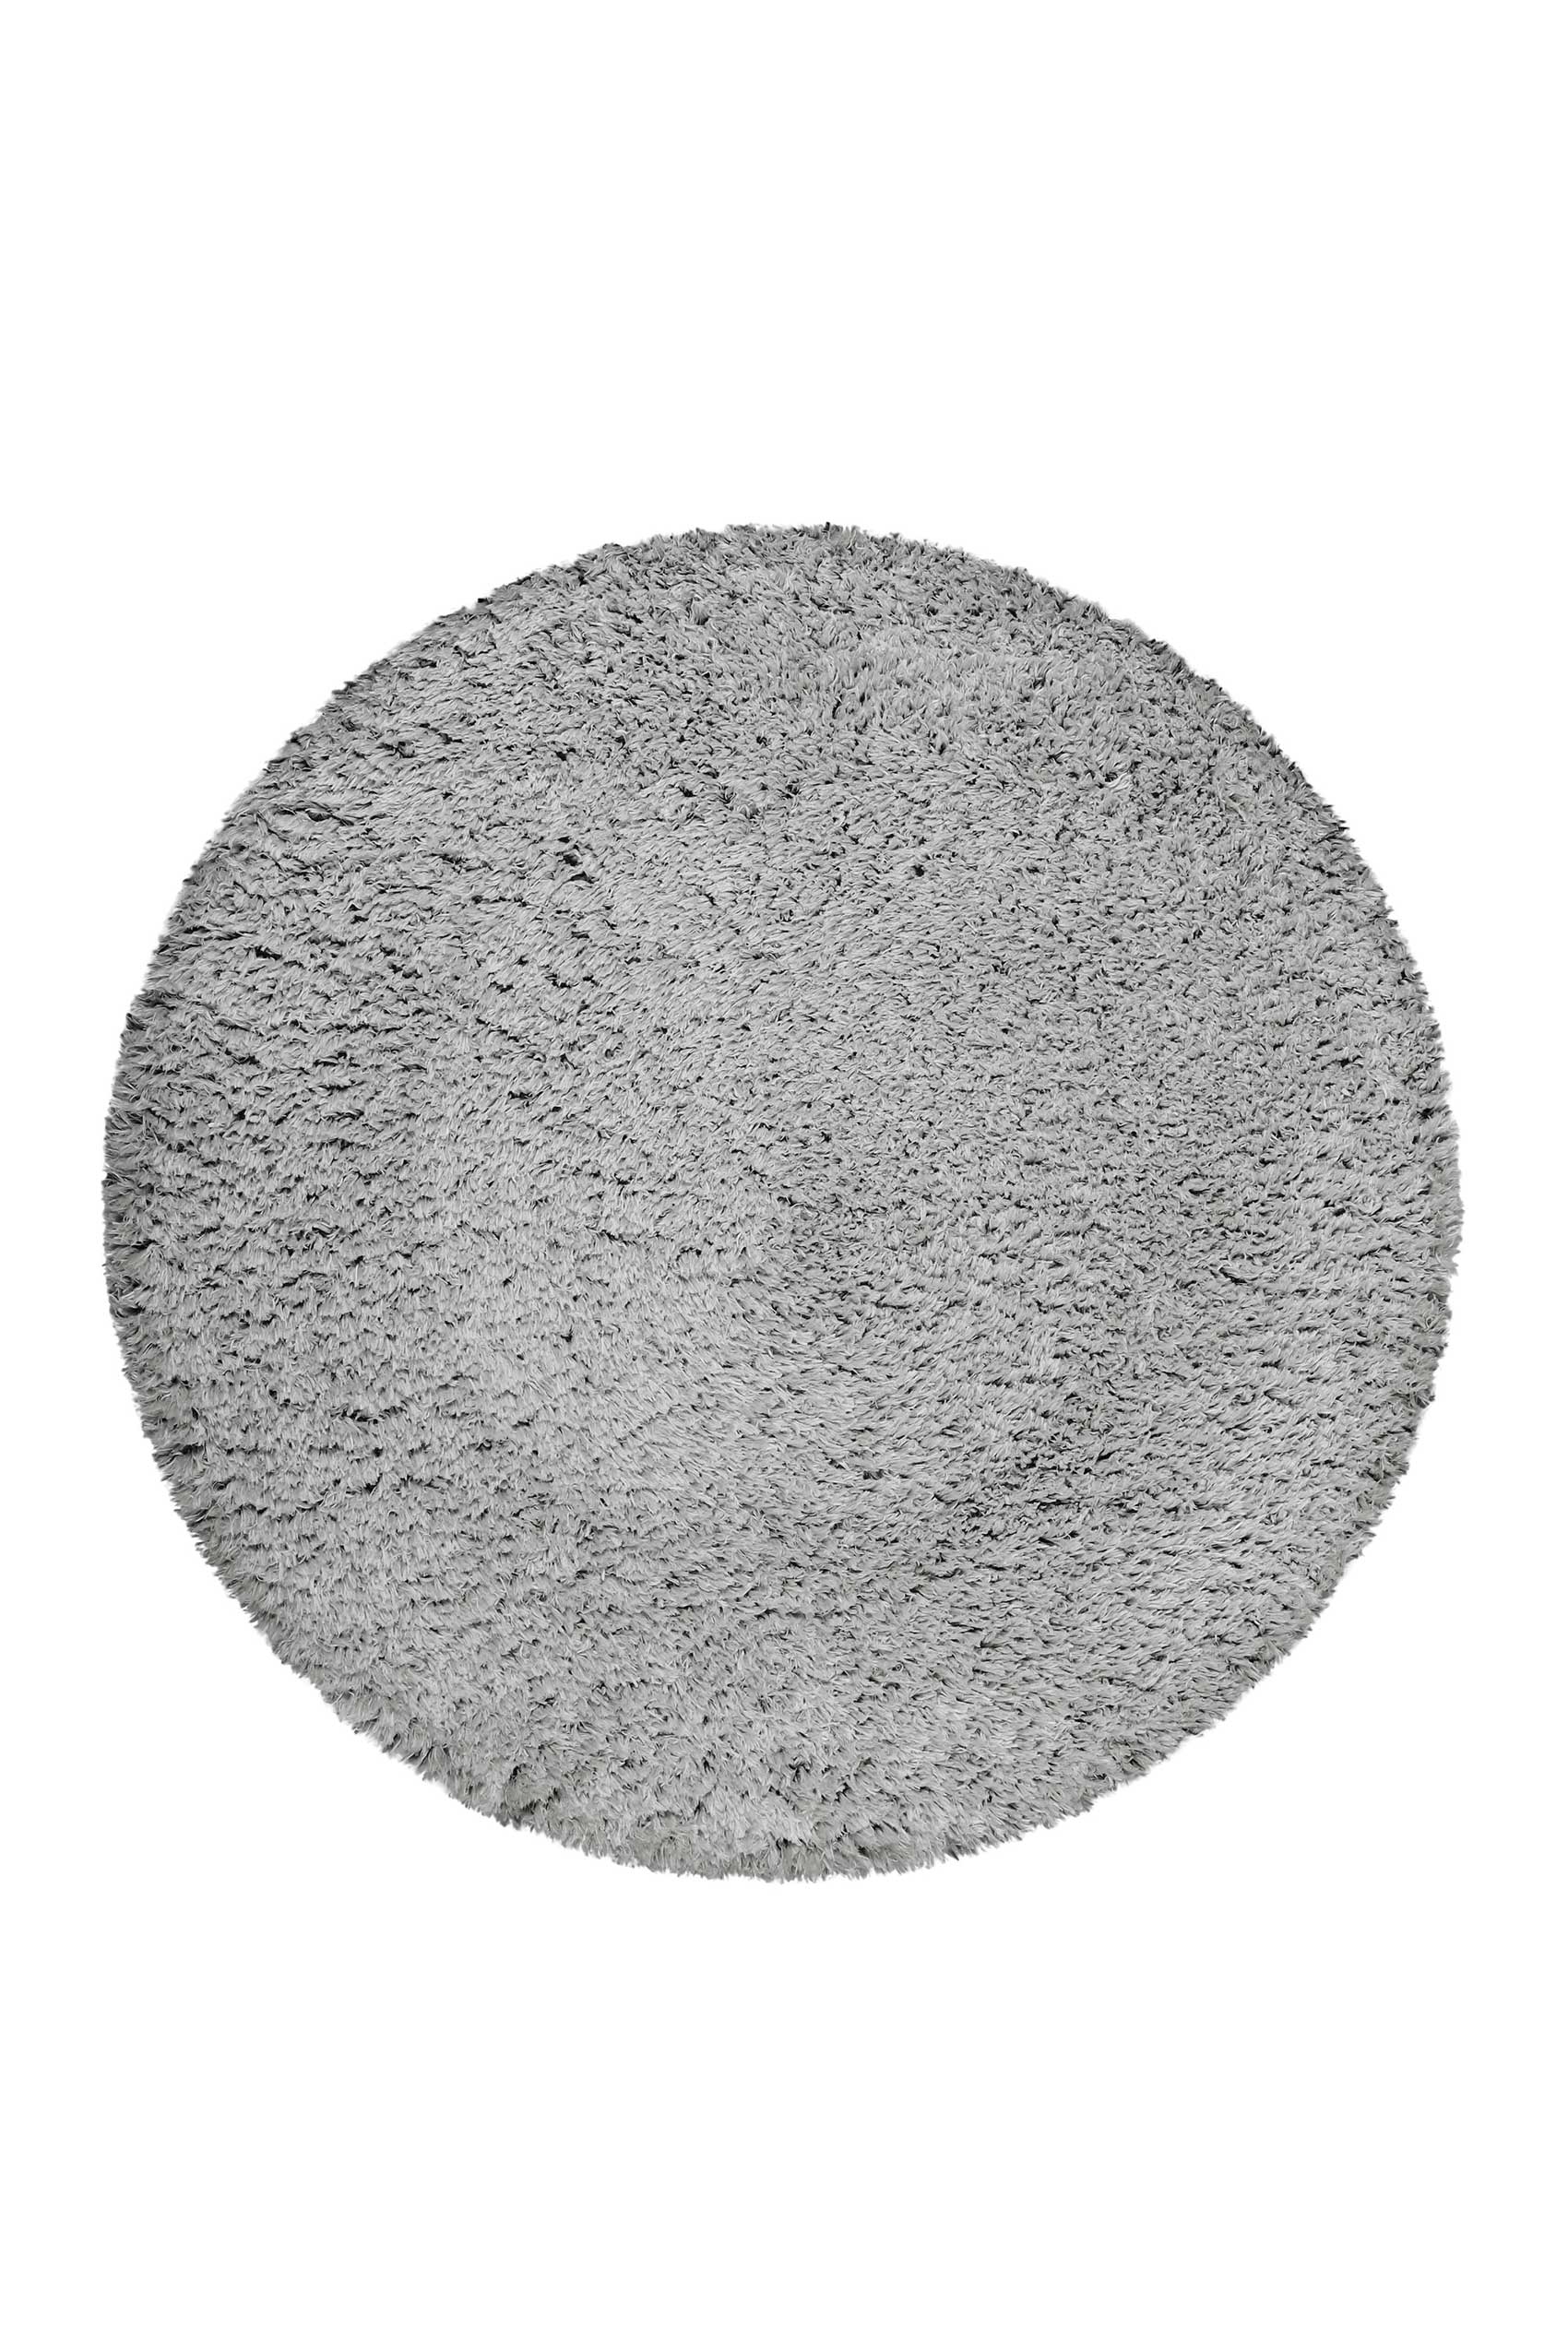 Esprit Teppich Rund grau weich soft & nachhaltig » Yogi « - Ansicht 1